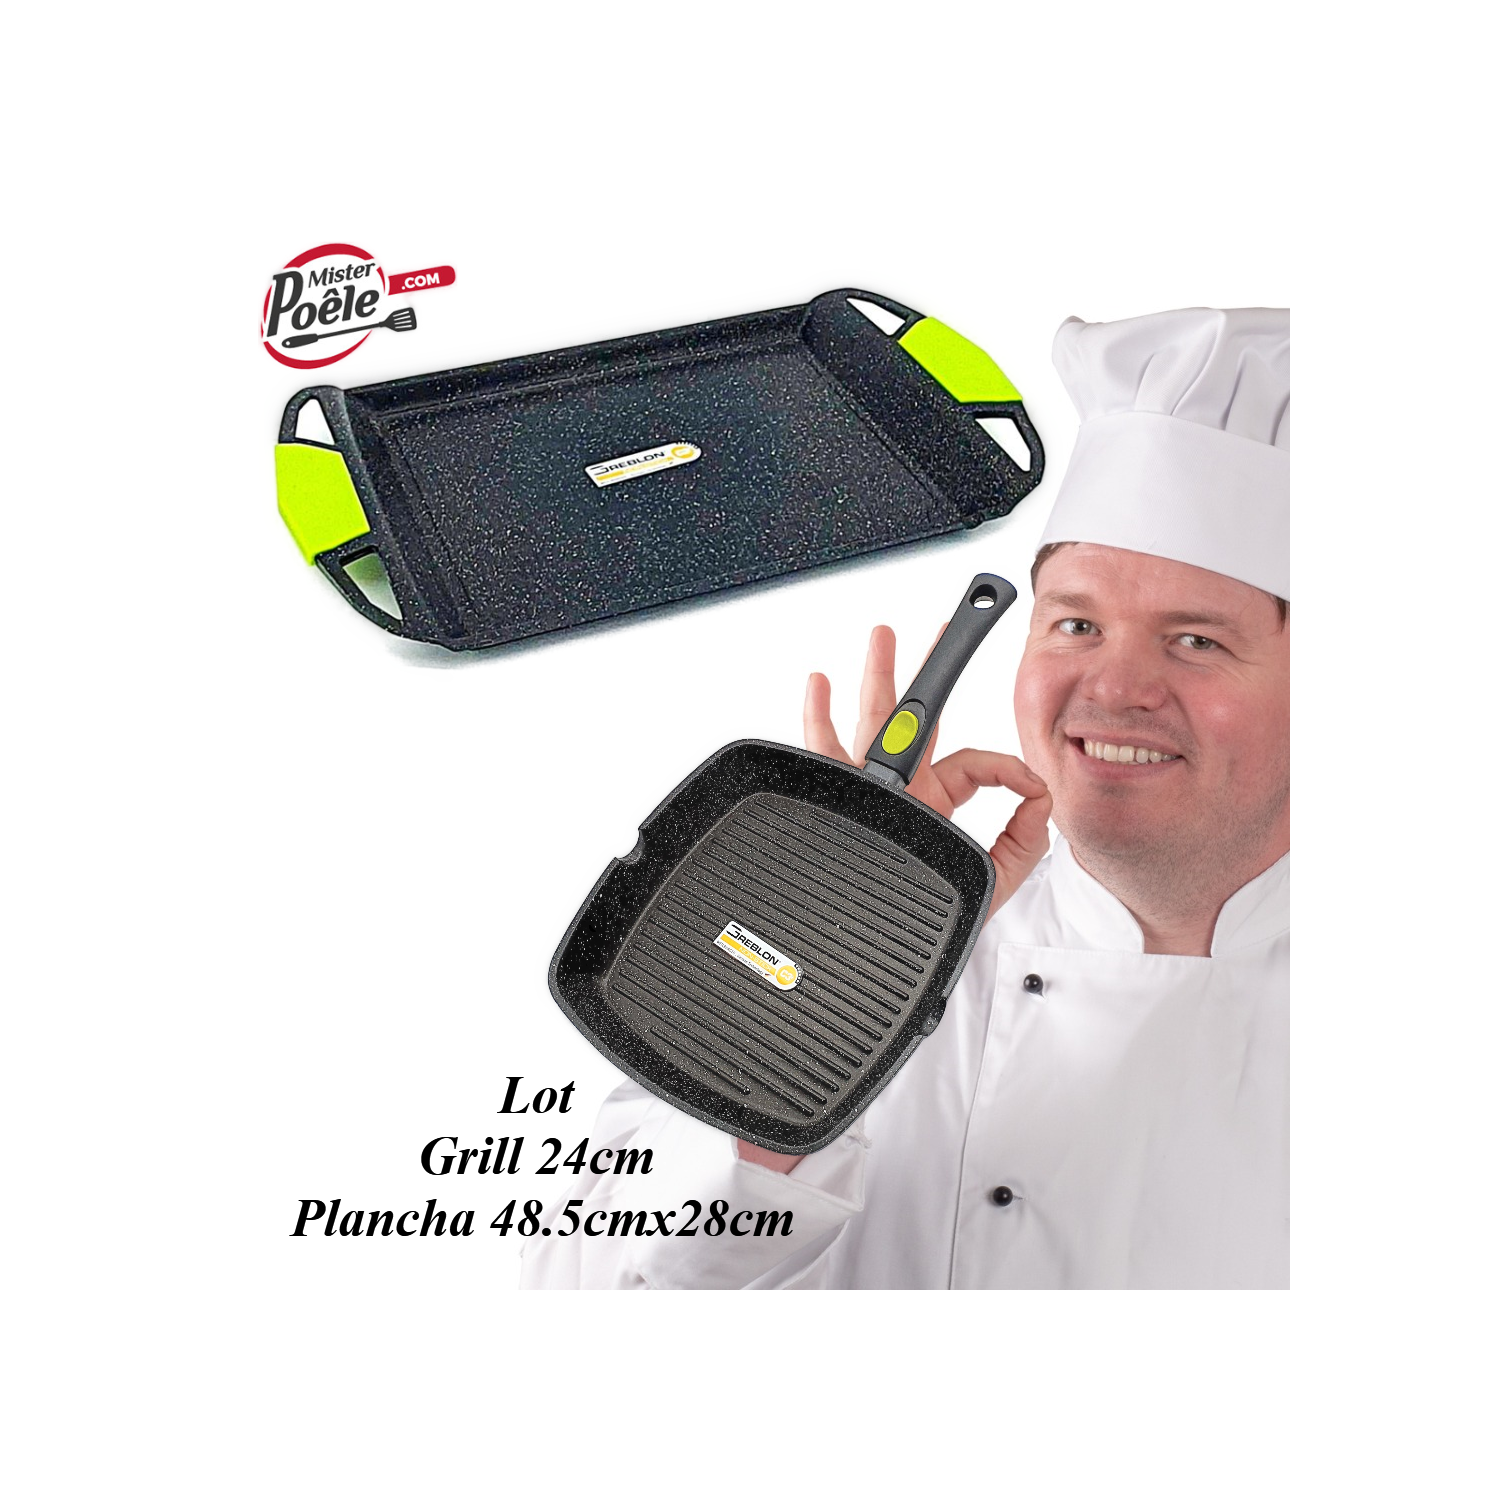 Grill 24cm  Plancha 48.5cmx28cm Espace Cuisine Professionnel